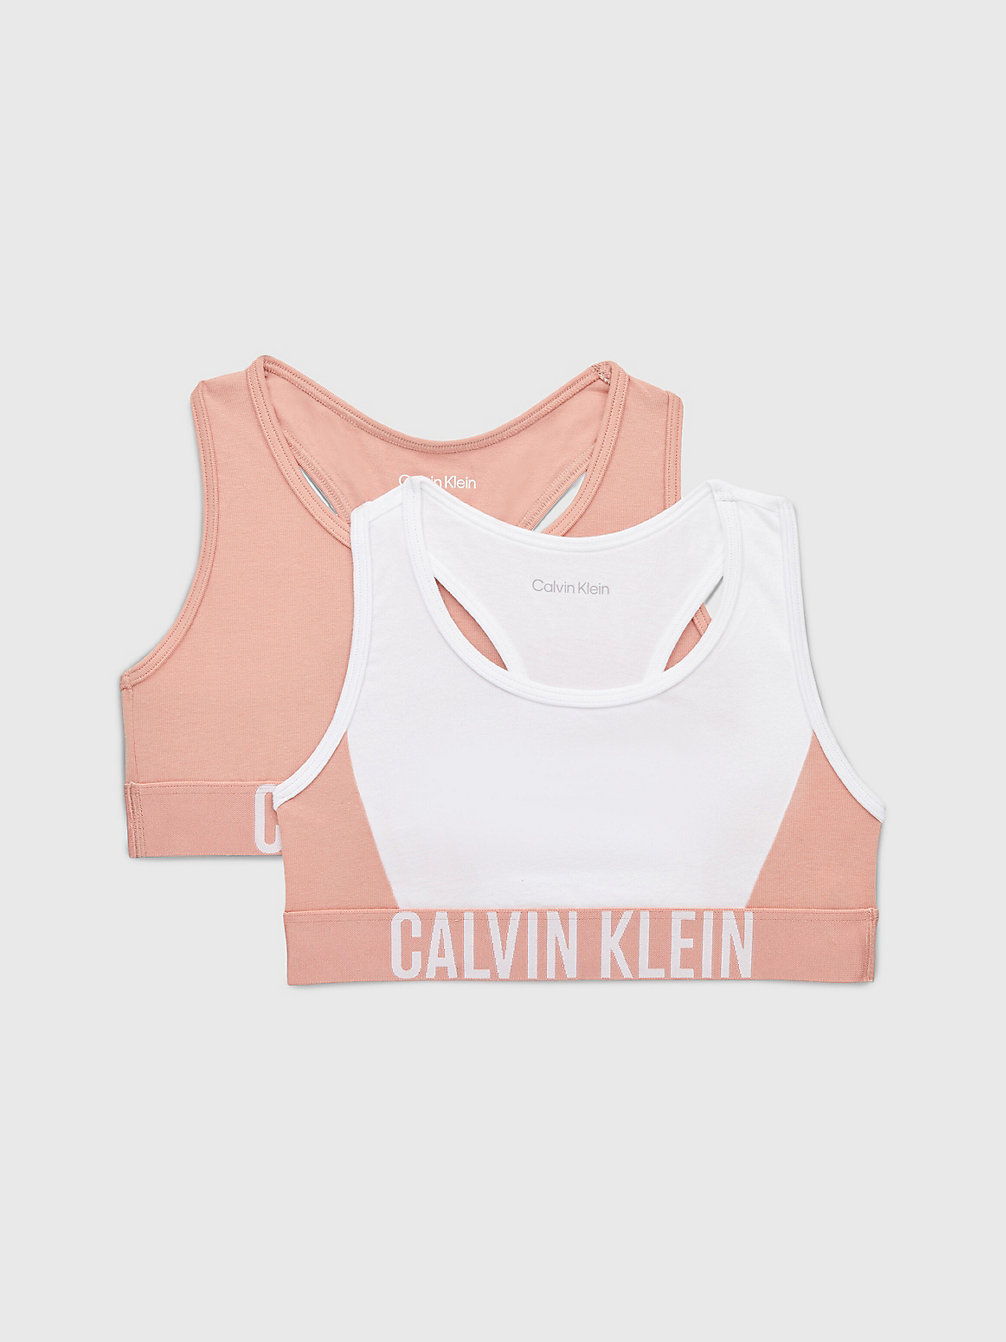 PINKMOCHA/PVHWHITE 2er-Pack Bralettes Für Mädchen – Intense Power undefined girls Calvin Klein